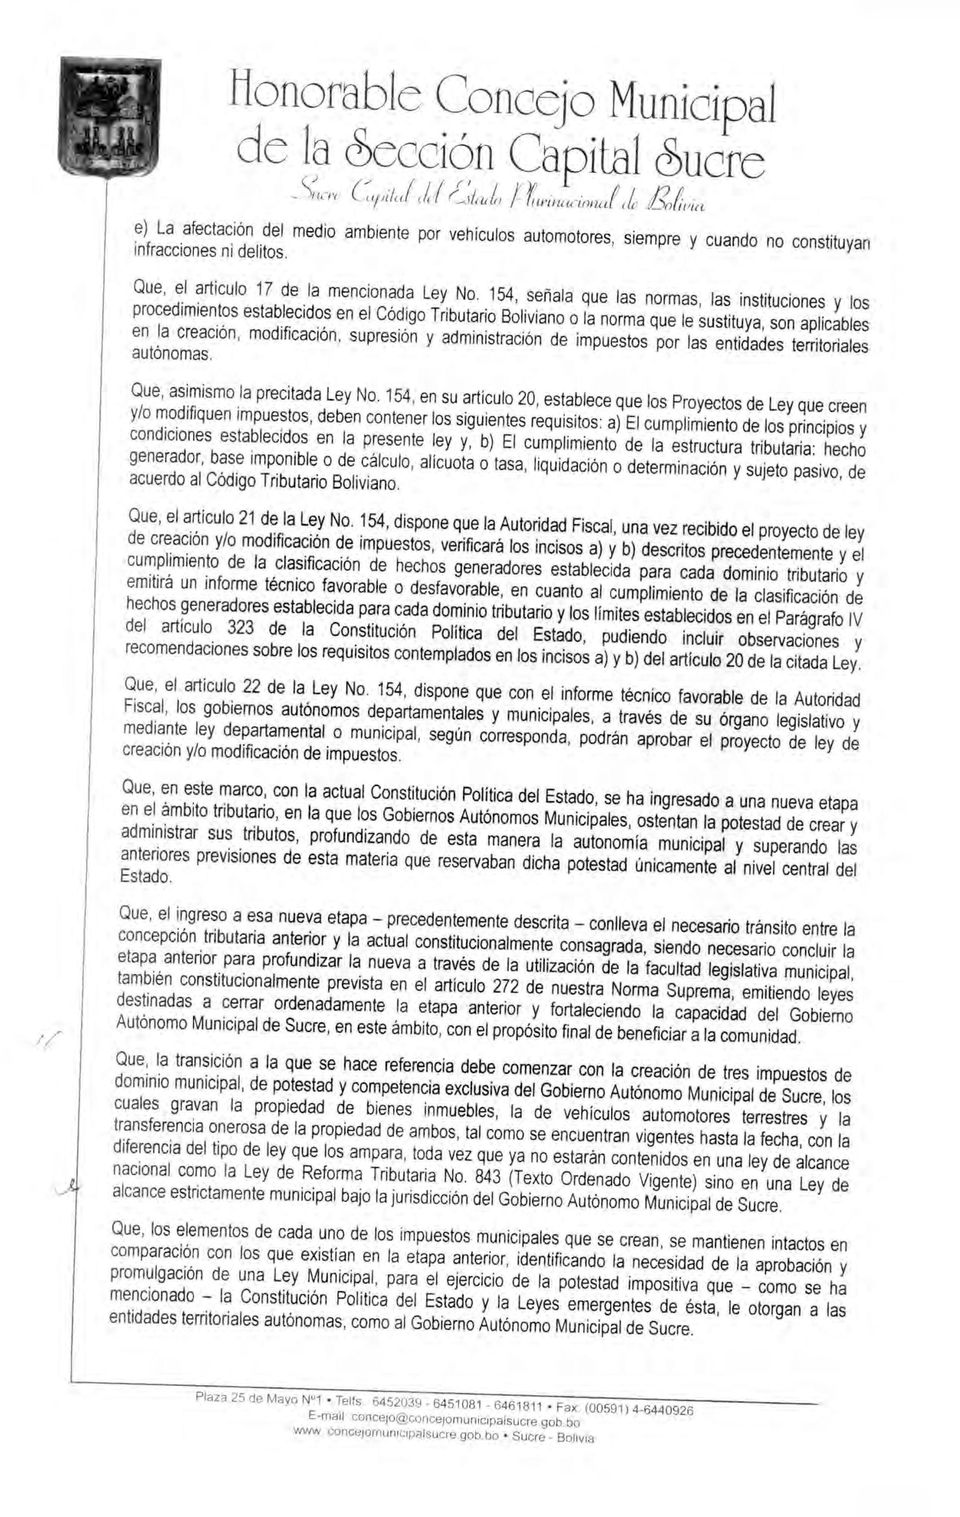 154, señala que las normas, las instituciones y los procedimientos establecidos en el Código Tributario Boliviano o la norma que le sustituya, son aplicables en la creación, modificación, supresión y